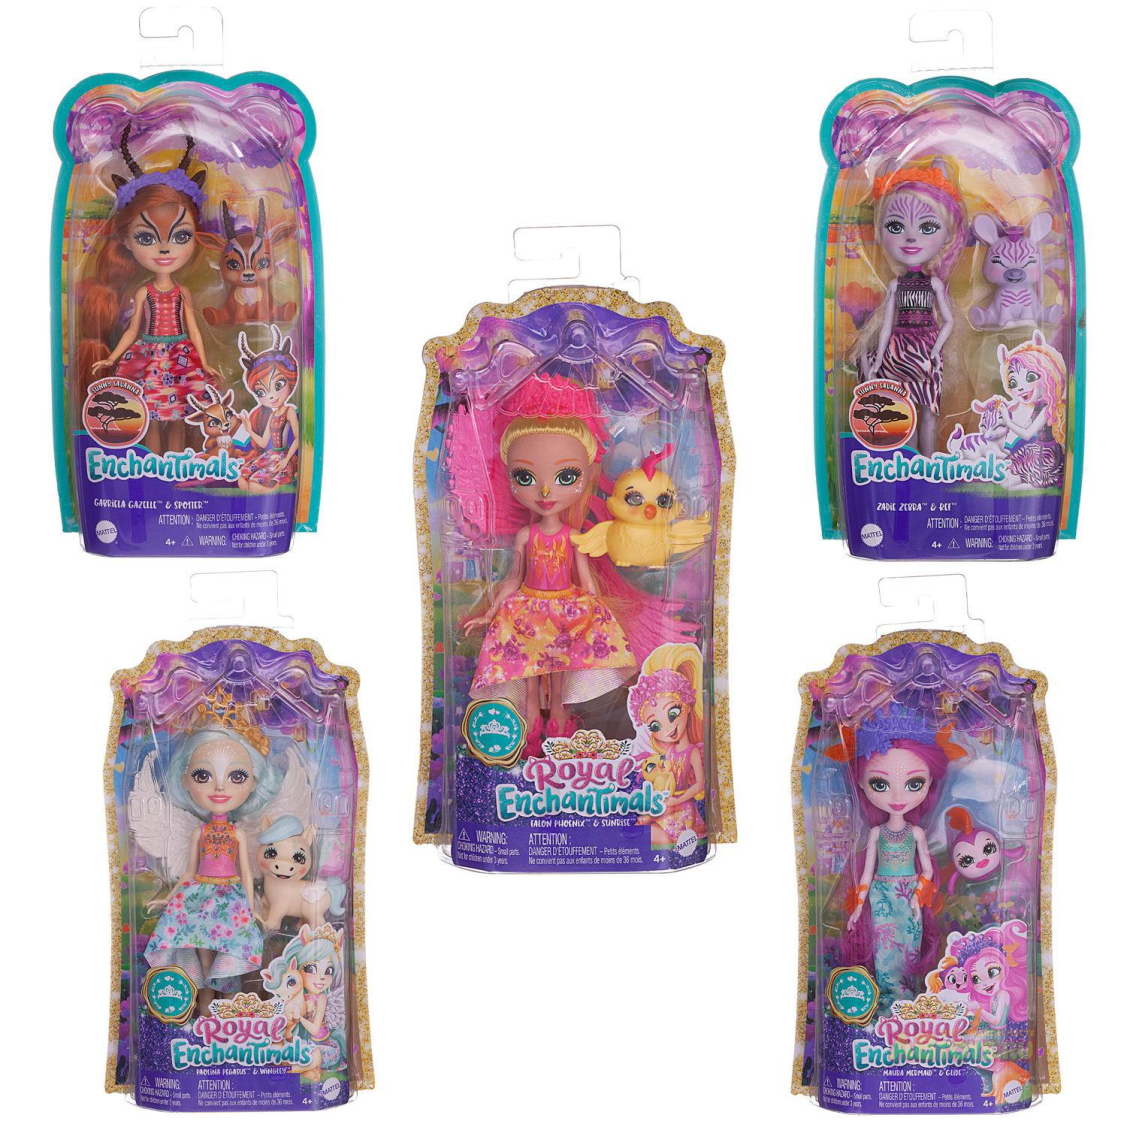 Кукла Mattel Enchantimals со зверюшкой Дополнительная